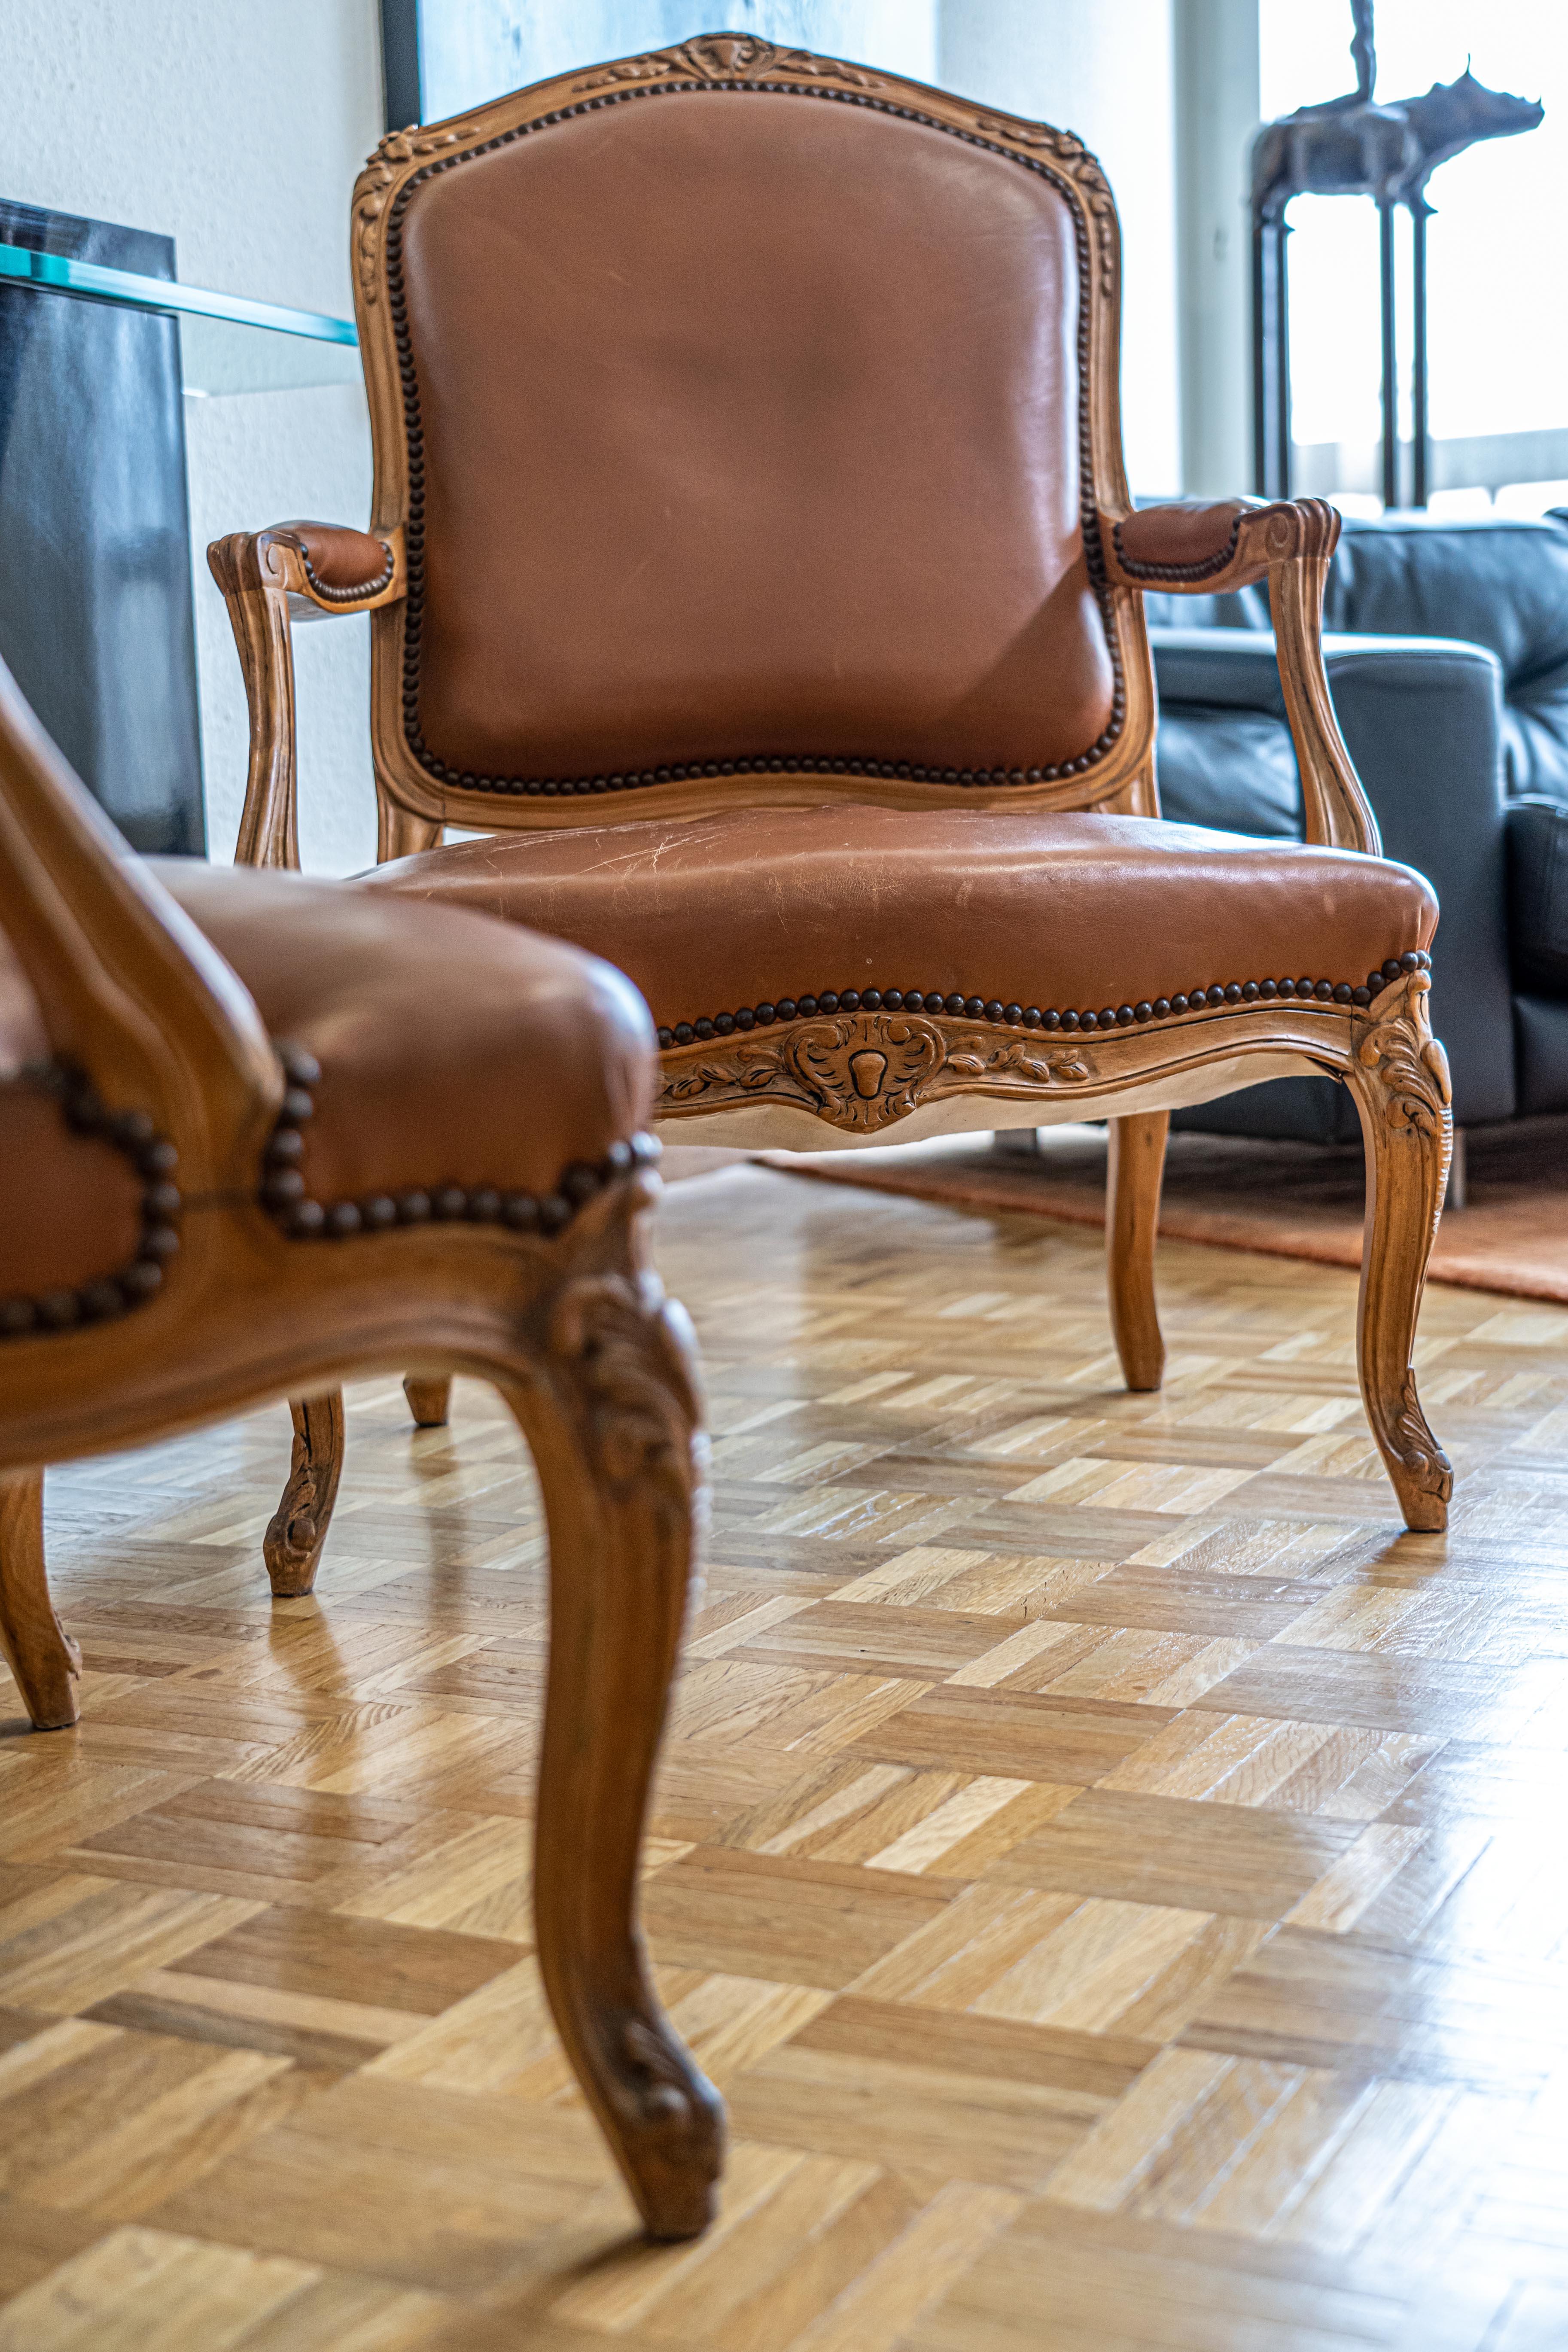 Paar Sessel im Louis XV-Stil vom Ende des 19. Jahrhunderts aus Eichenholz in perfektem Zustand und gepolstert in einem kamelfarbenen Leder.
  